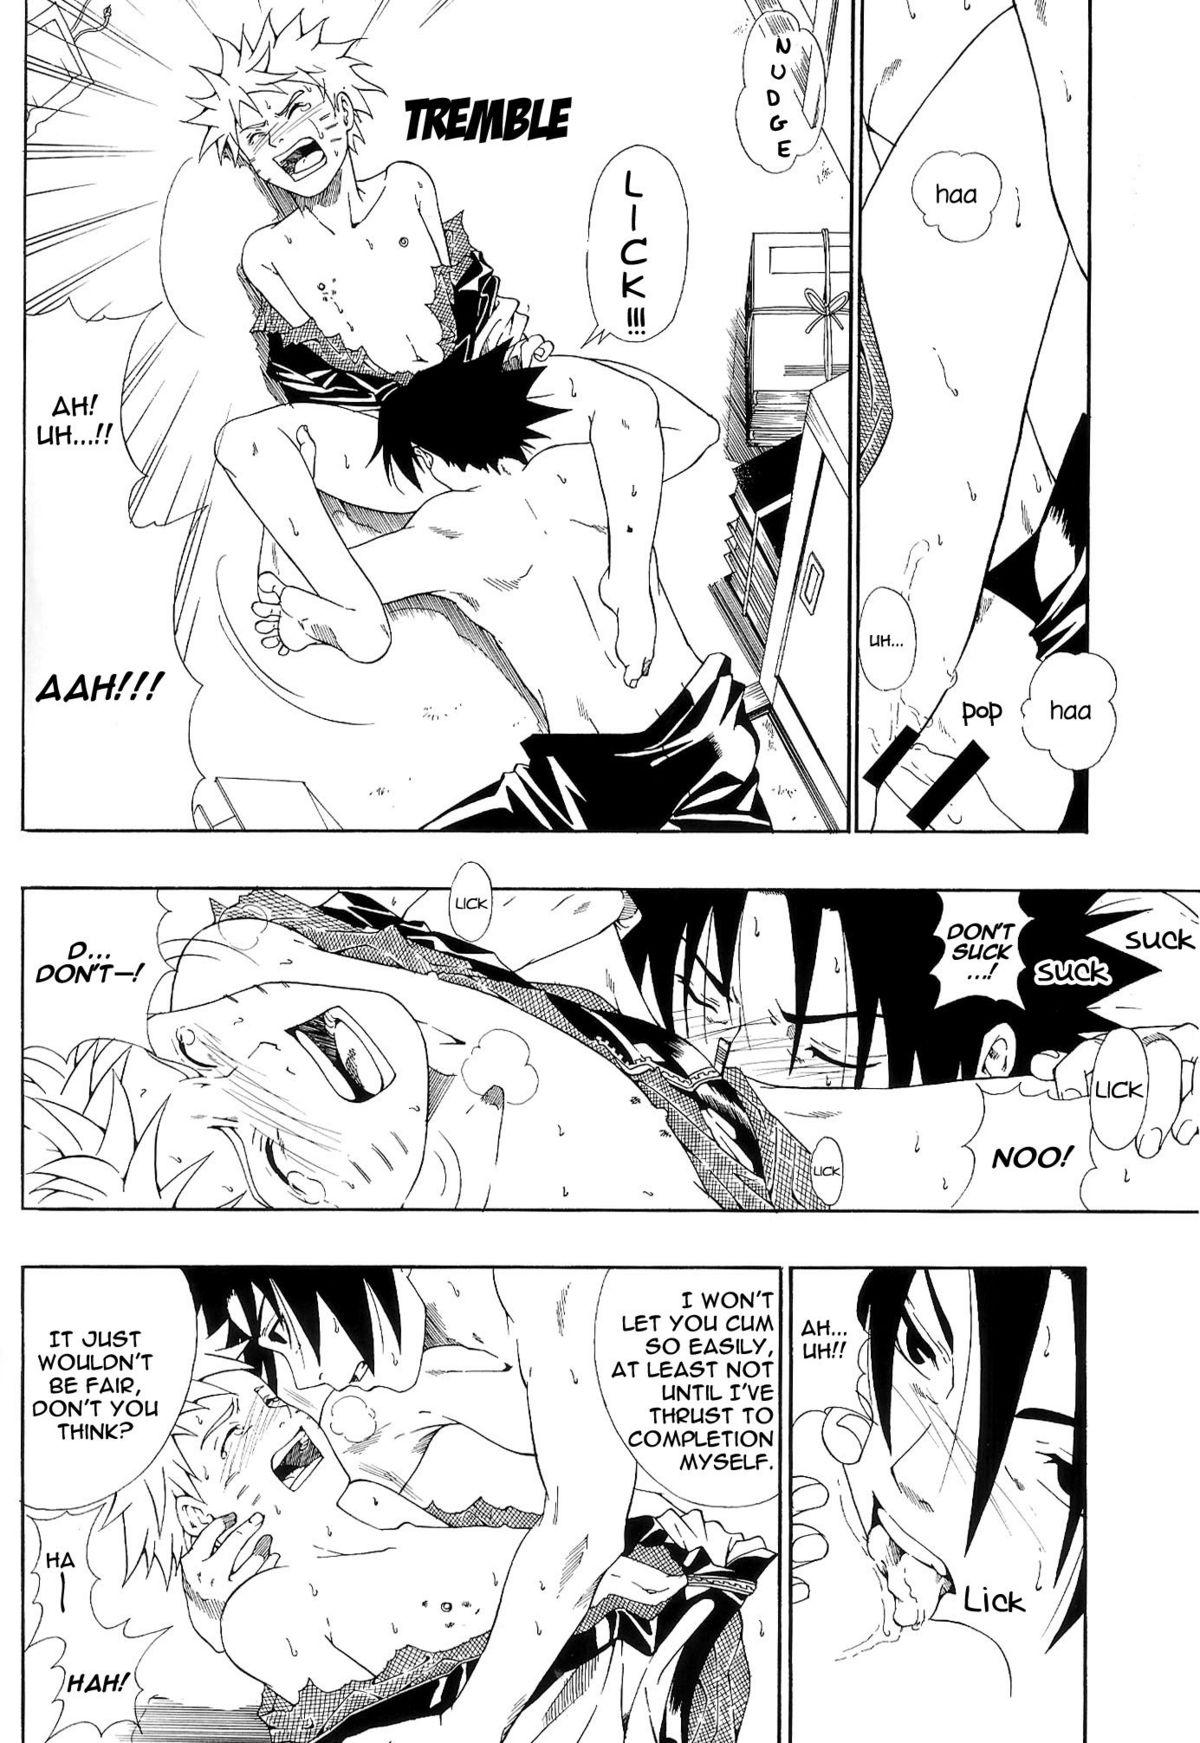 ERO ERO²: Volume 1.5  (NARUTO) [Sasuke X Naruto] YAOI -ENG- 8